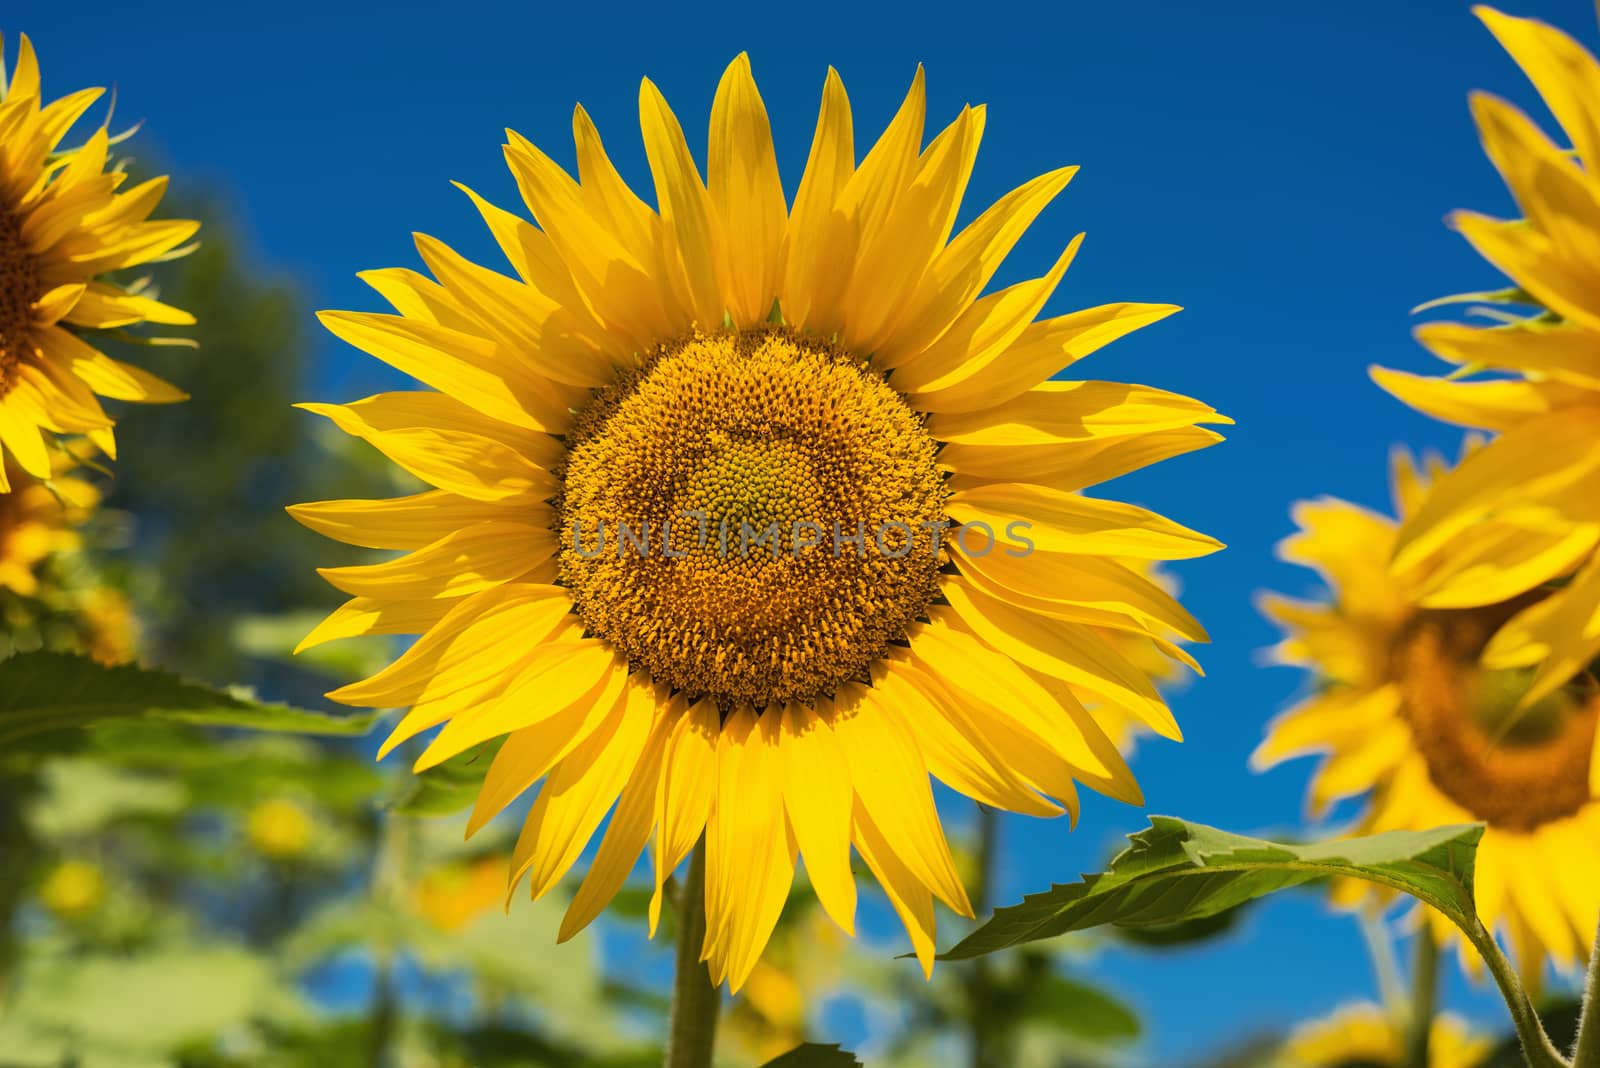 Sunflower field landscape by HERRAEZ